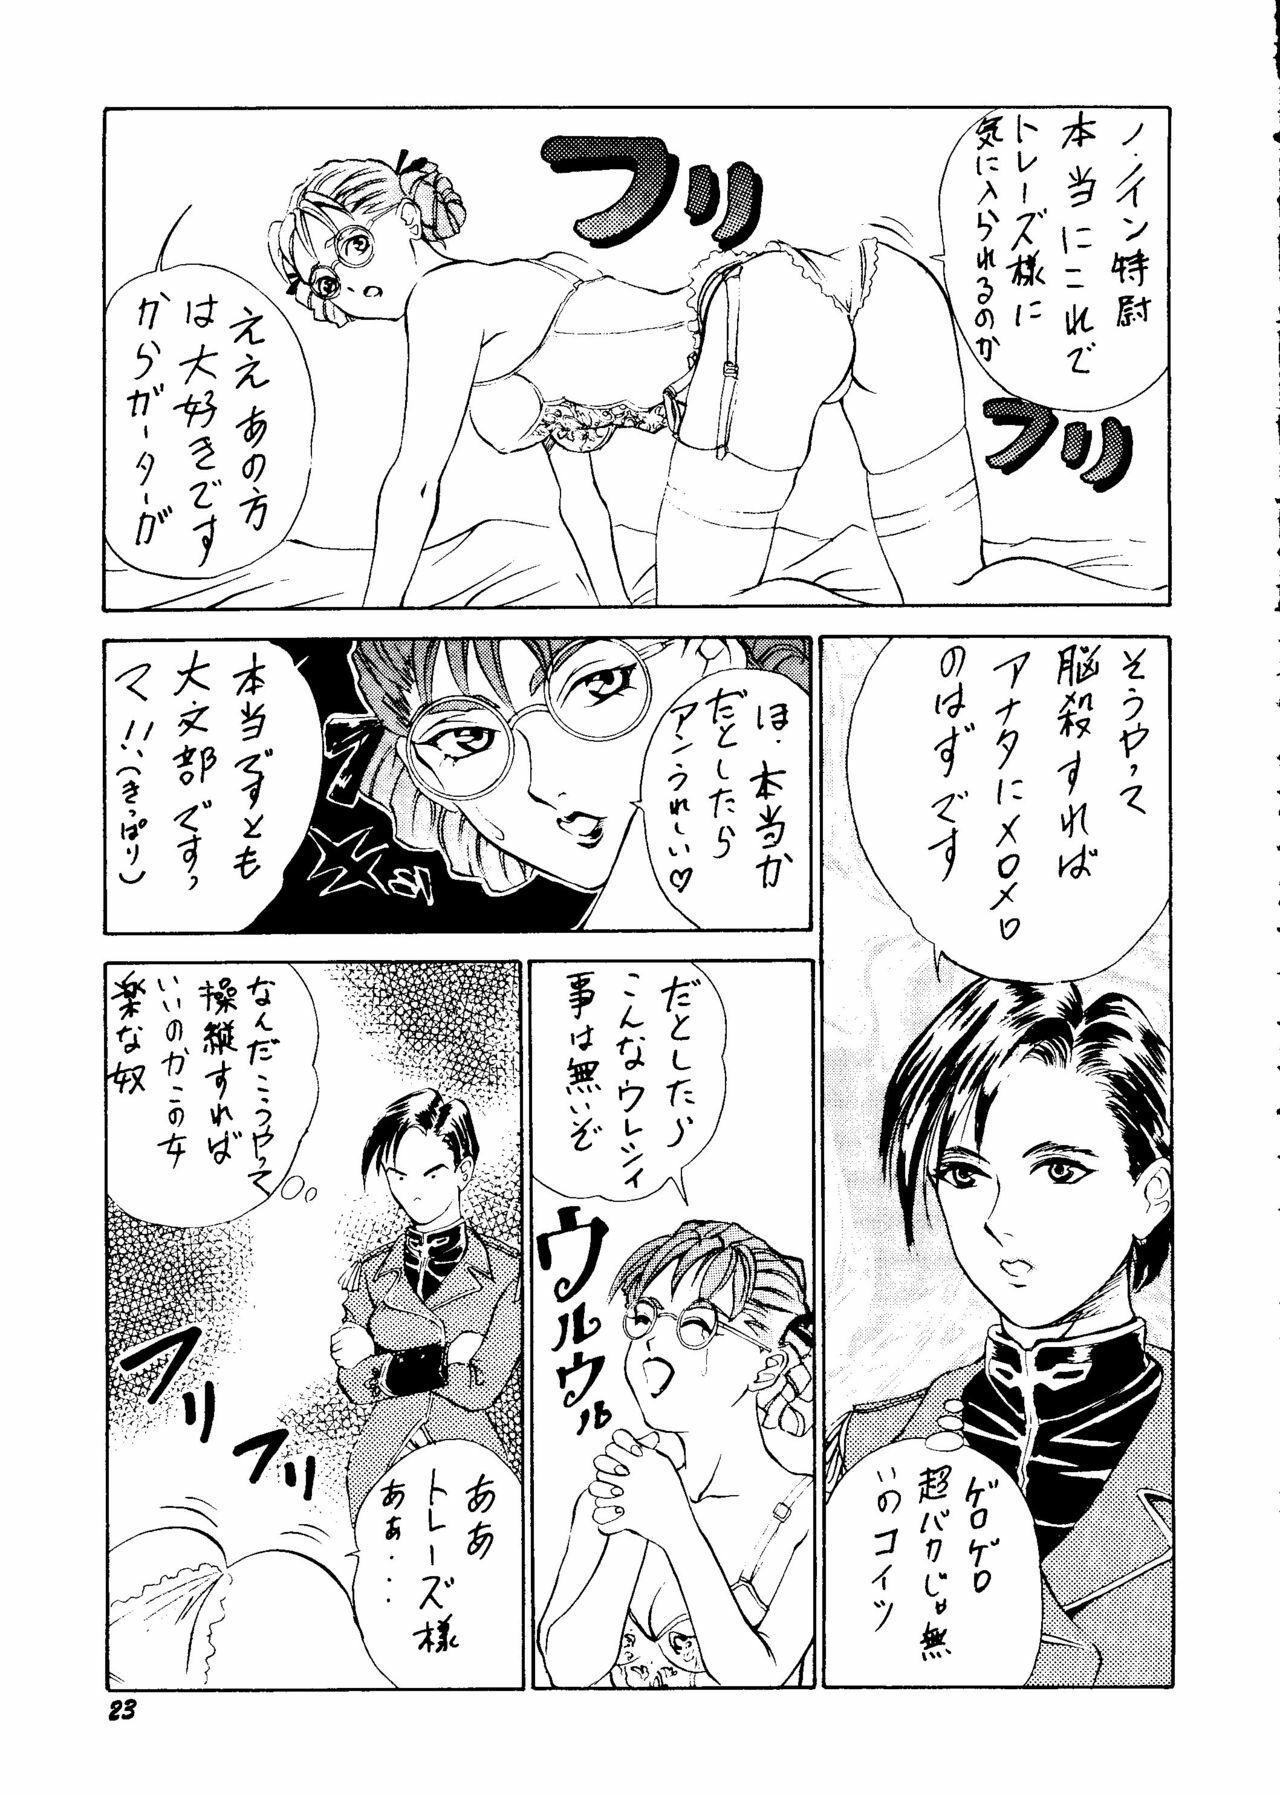 [Rupinasu Touzokudan & Cha Cha Cha Brothers] Shinu no wa Yatsura da (Gundam Wing) page 22 full